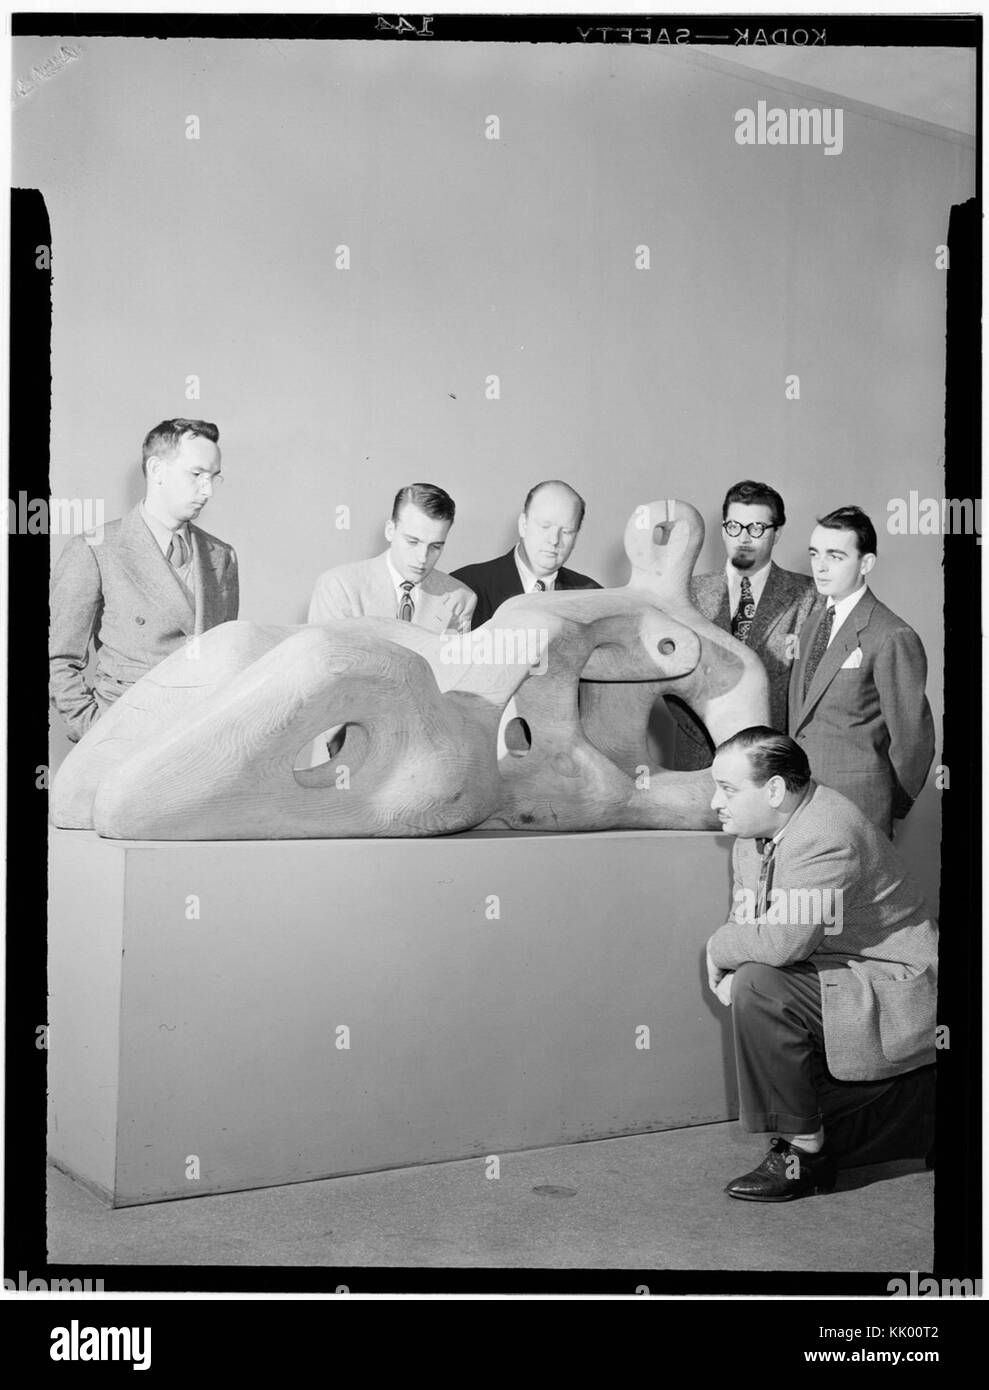 (Retrato de Eddie Sauter, Neal Hefti, Edwin A. Finckel, George Handy, Ralph Burns, y Johnny Richards, Museo de Arte Moderno de Nueva York, N.Y., ca. Marzo 1947) (LOC) (4888058445) Foto de stock